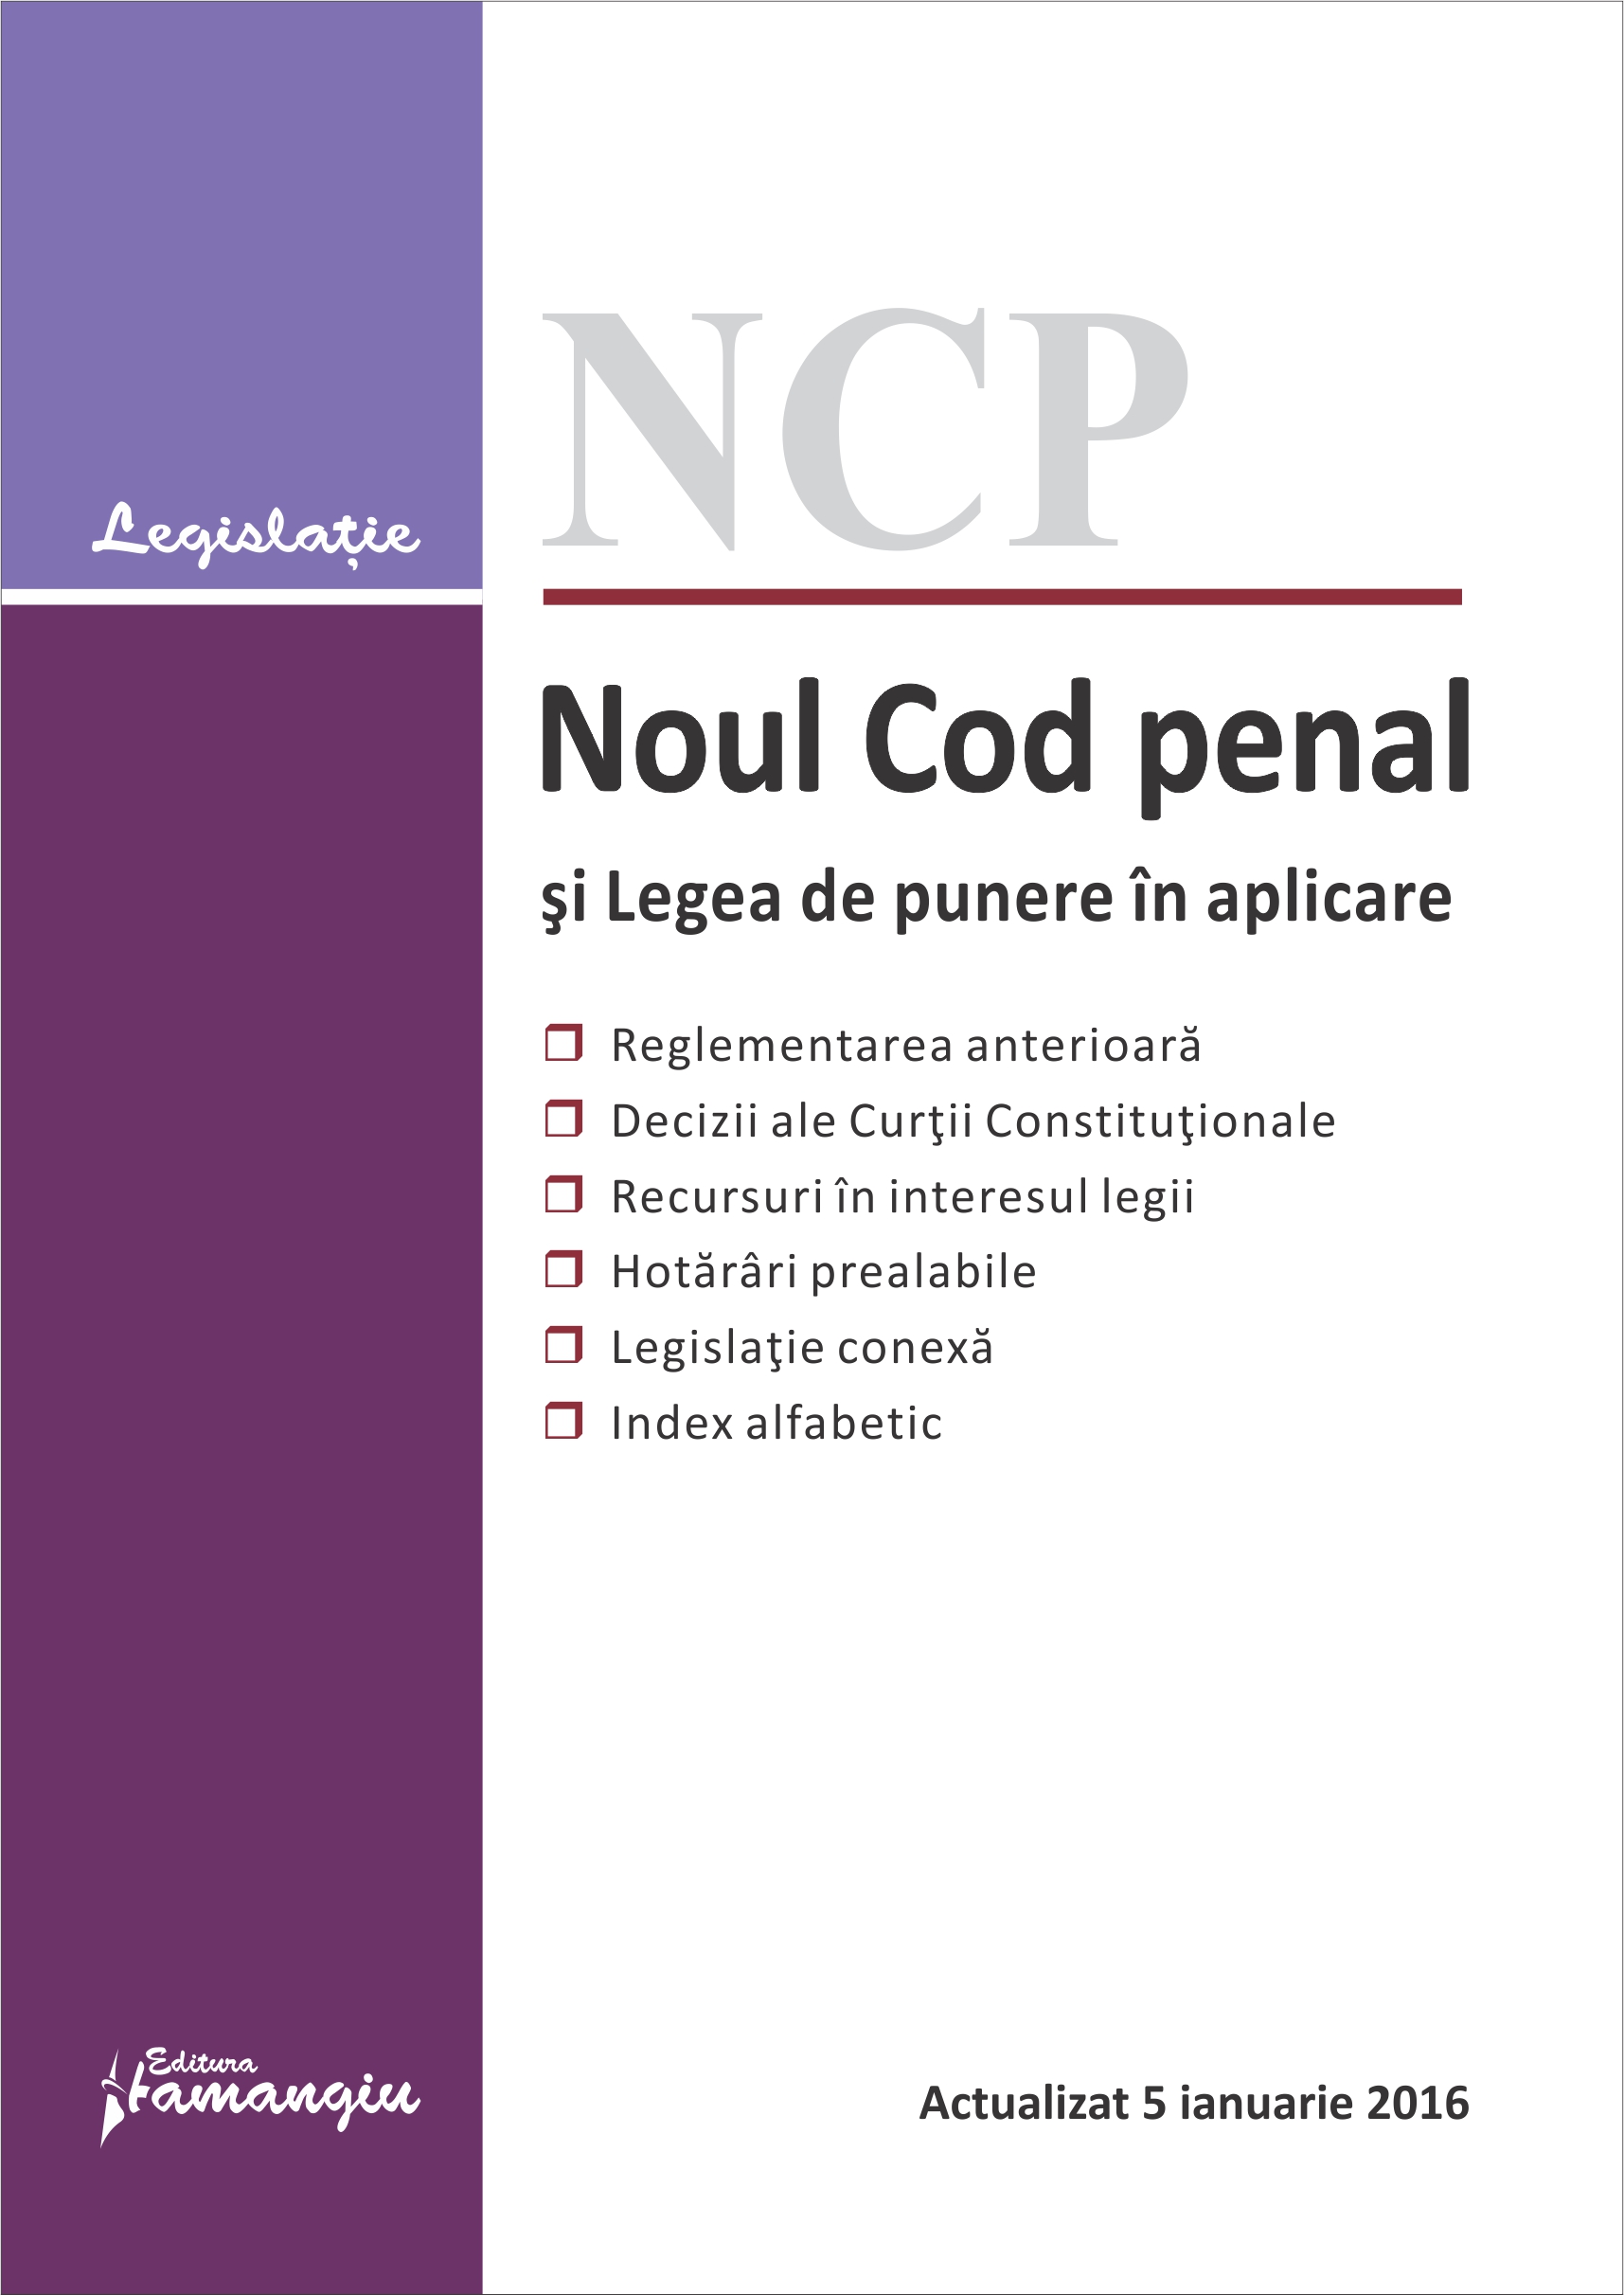 Noul Cod penal si Legea de punere in aplicare act. 5 ianuarie 2016